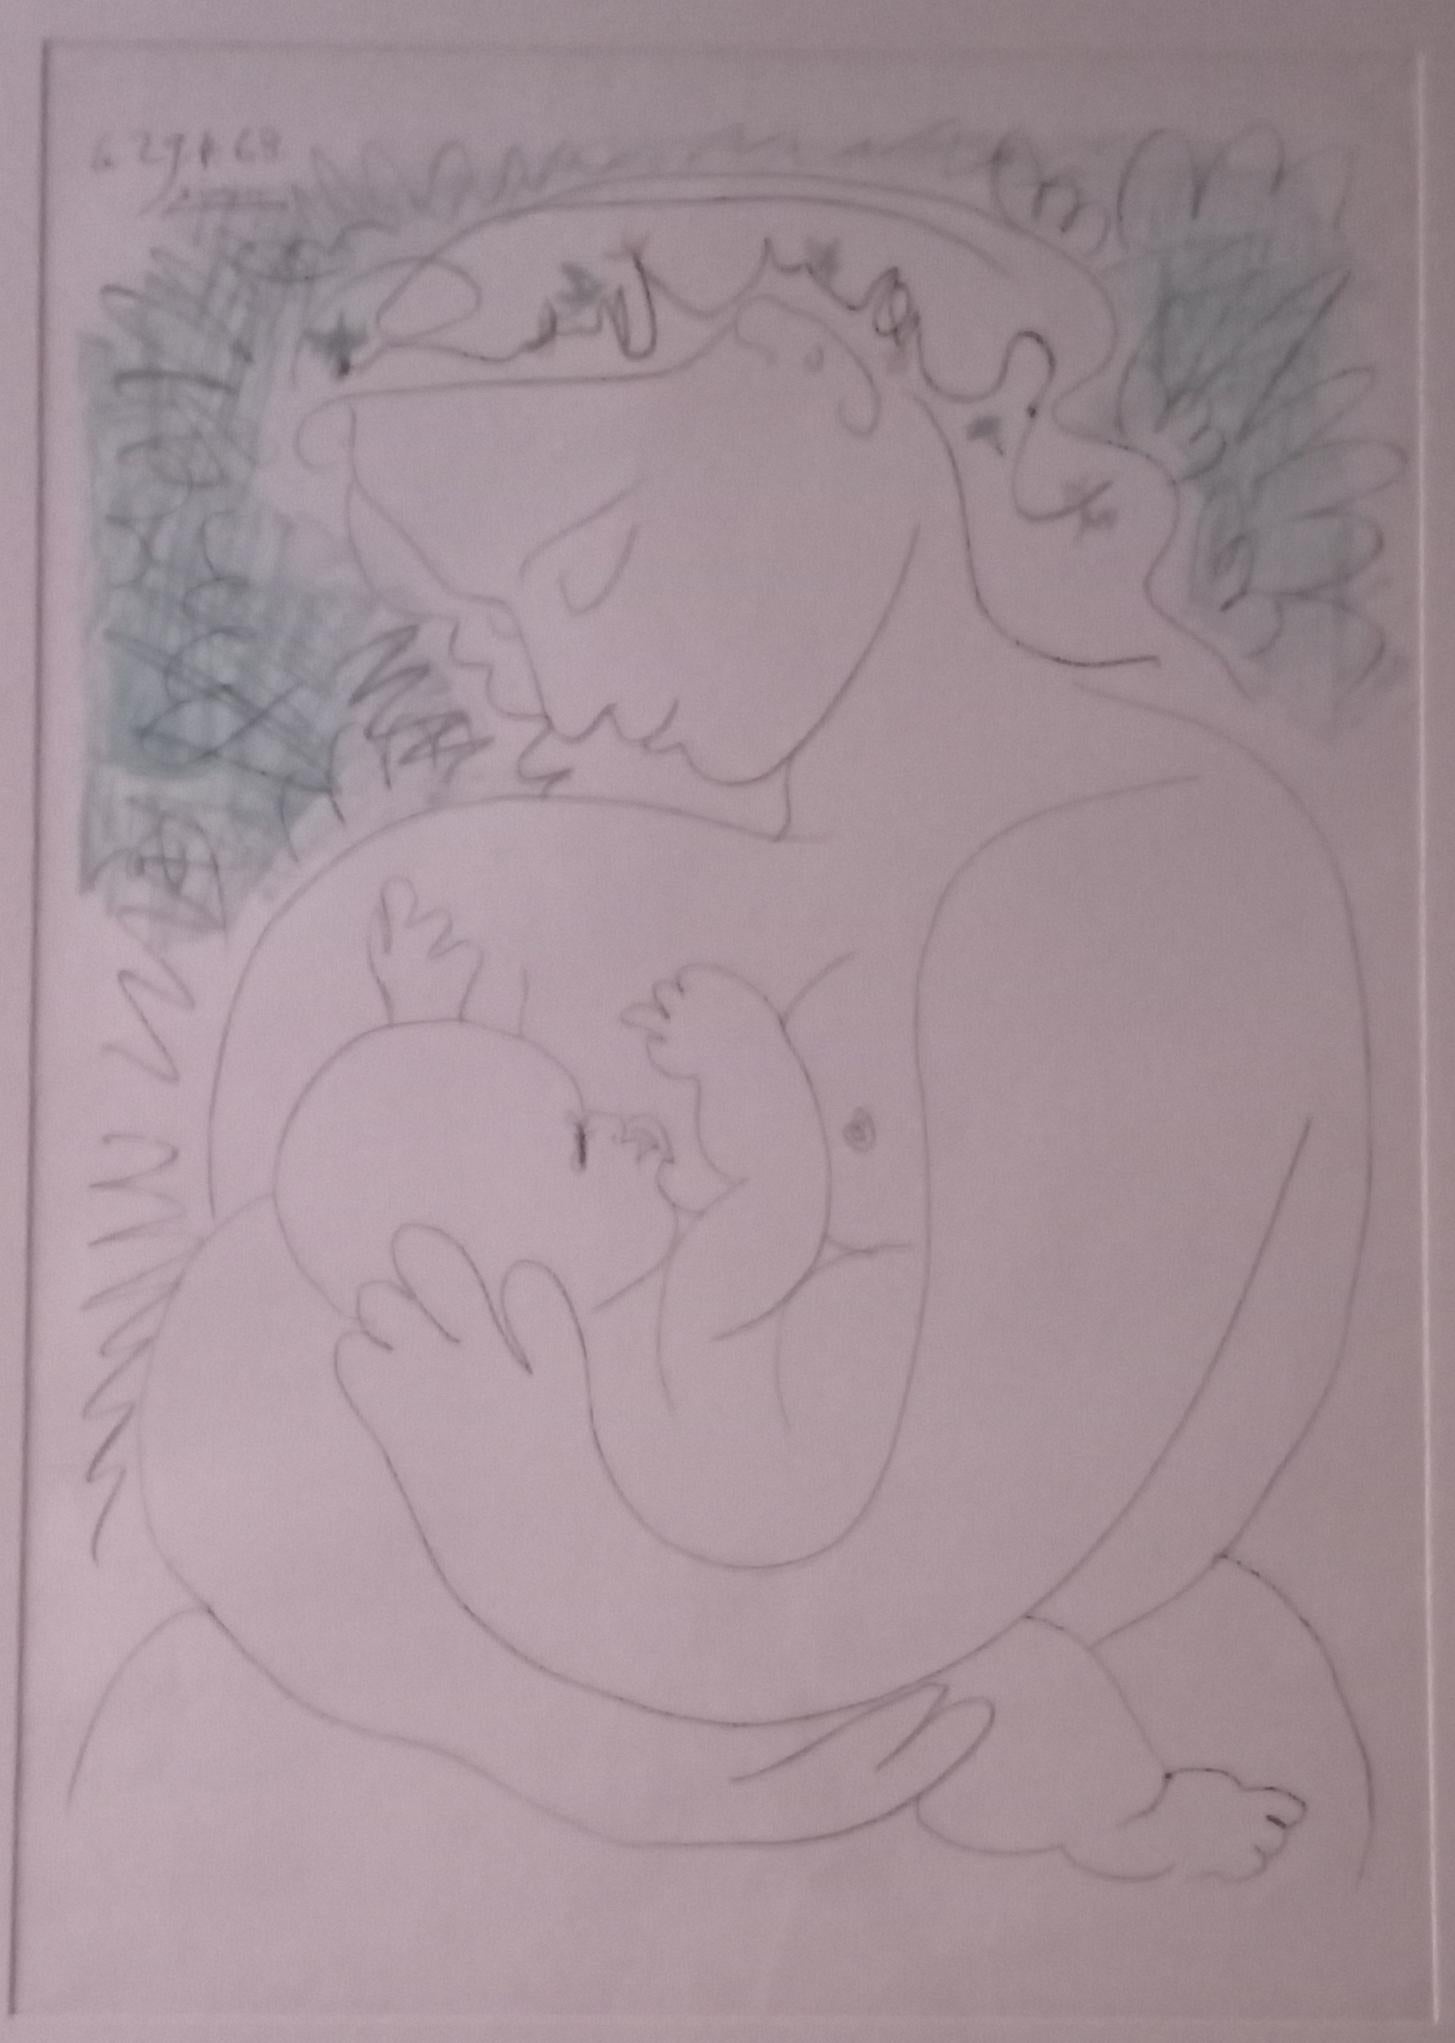 Grande Maternité - Print de Pablo Picasso